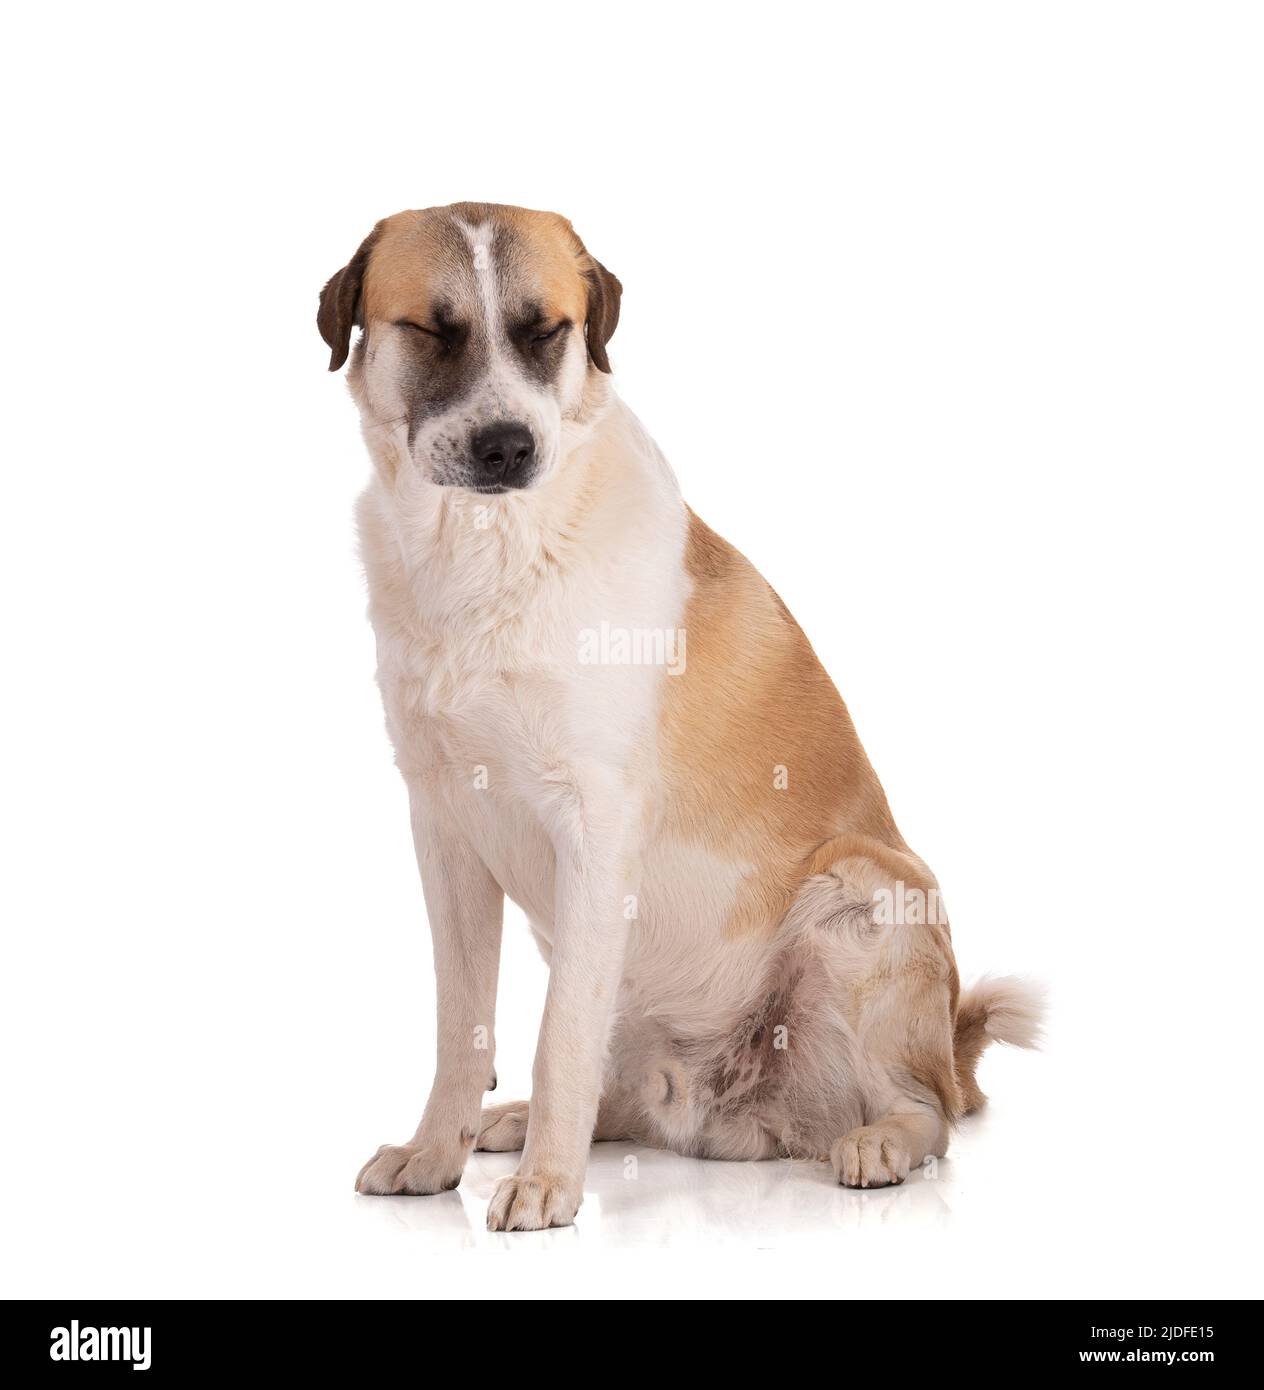 Grand Pyrenees ou Pyrénéen chien de montagne assis avec ses yeux fermés sur fond blanc Banque D'Images